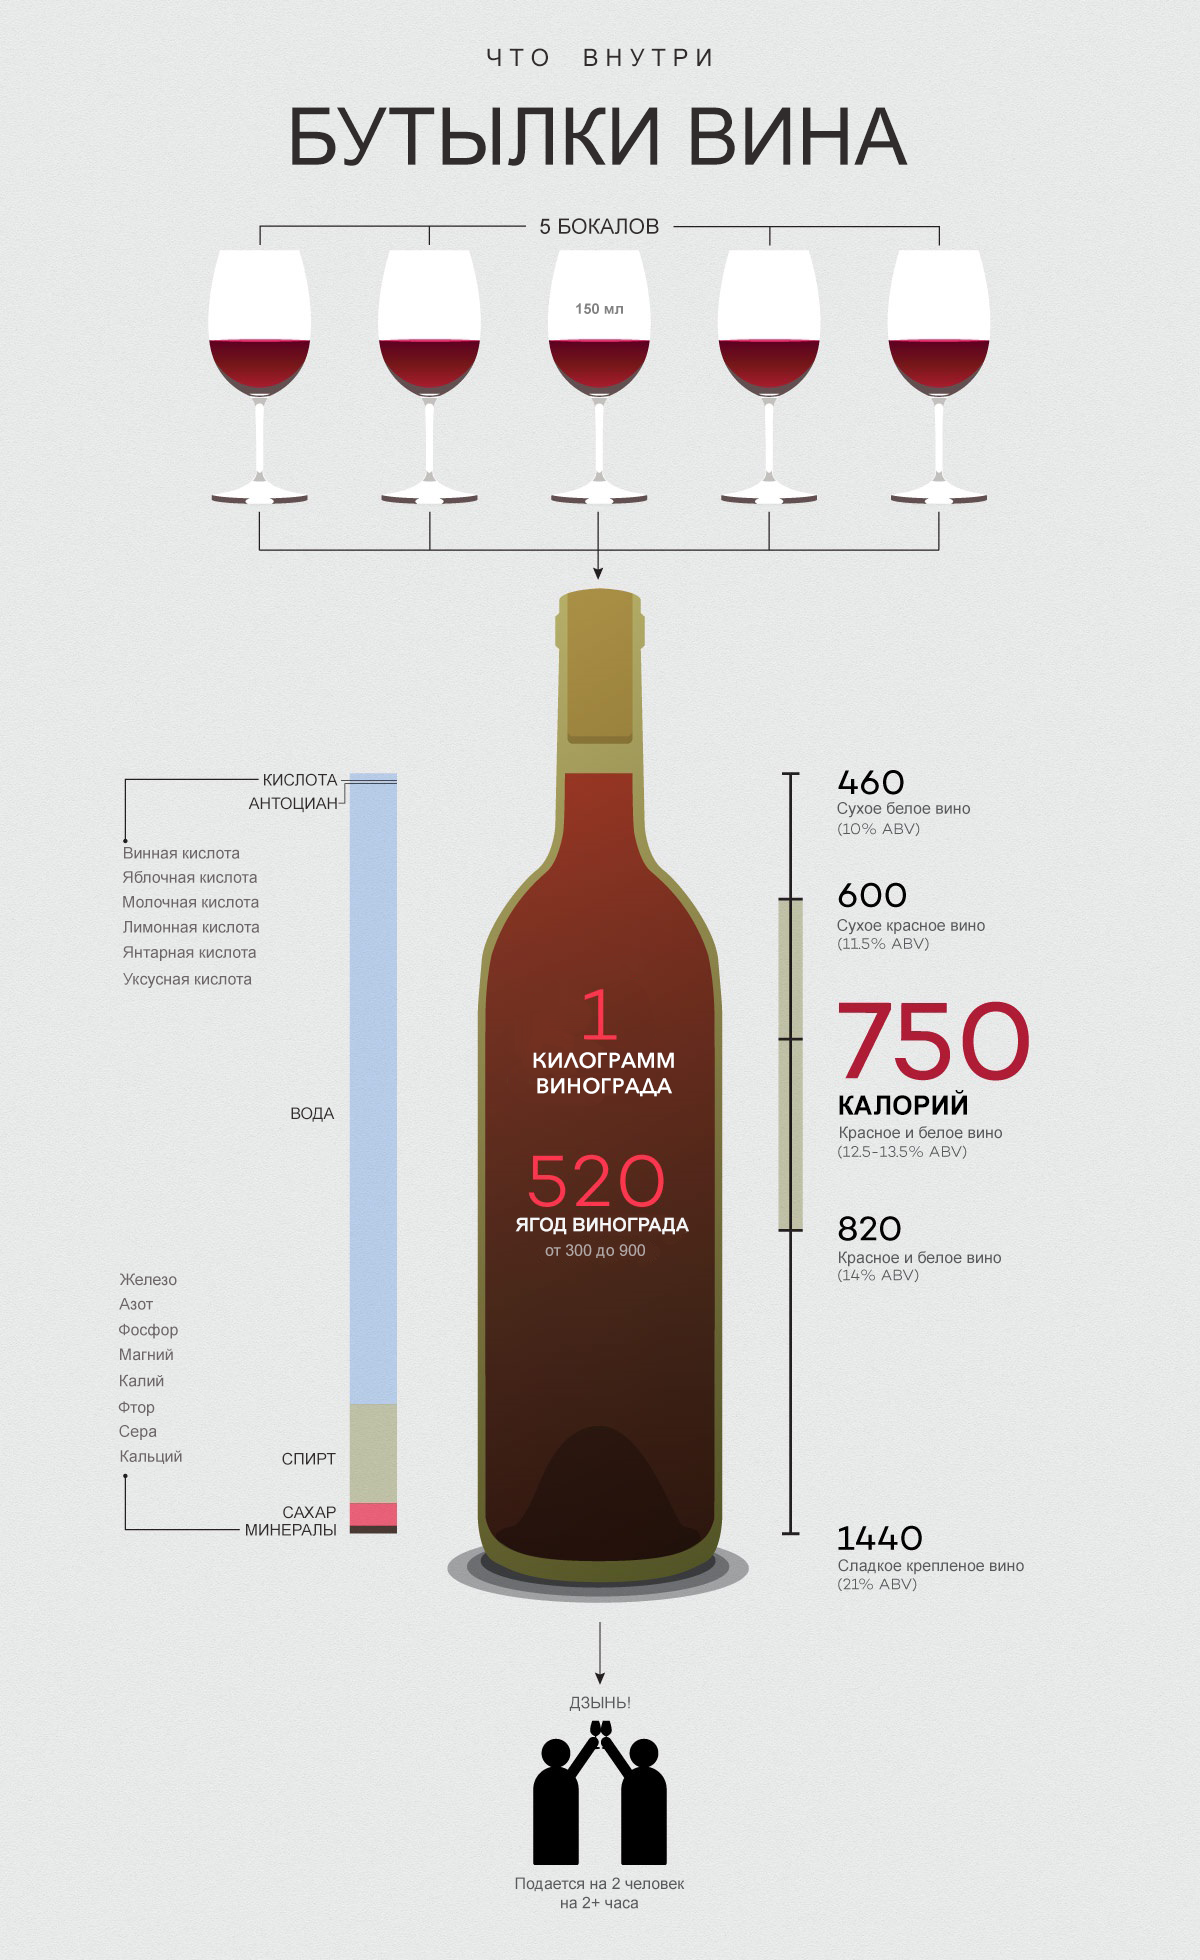 Сколько весит вин